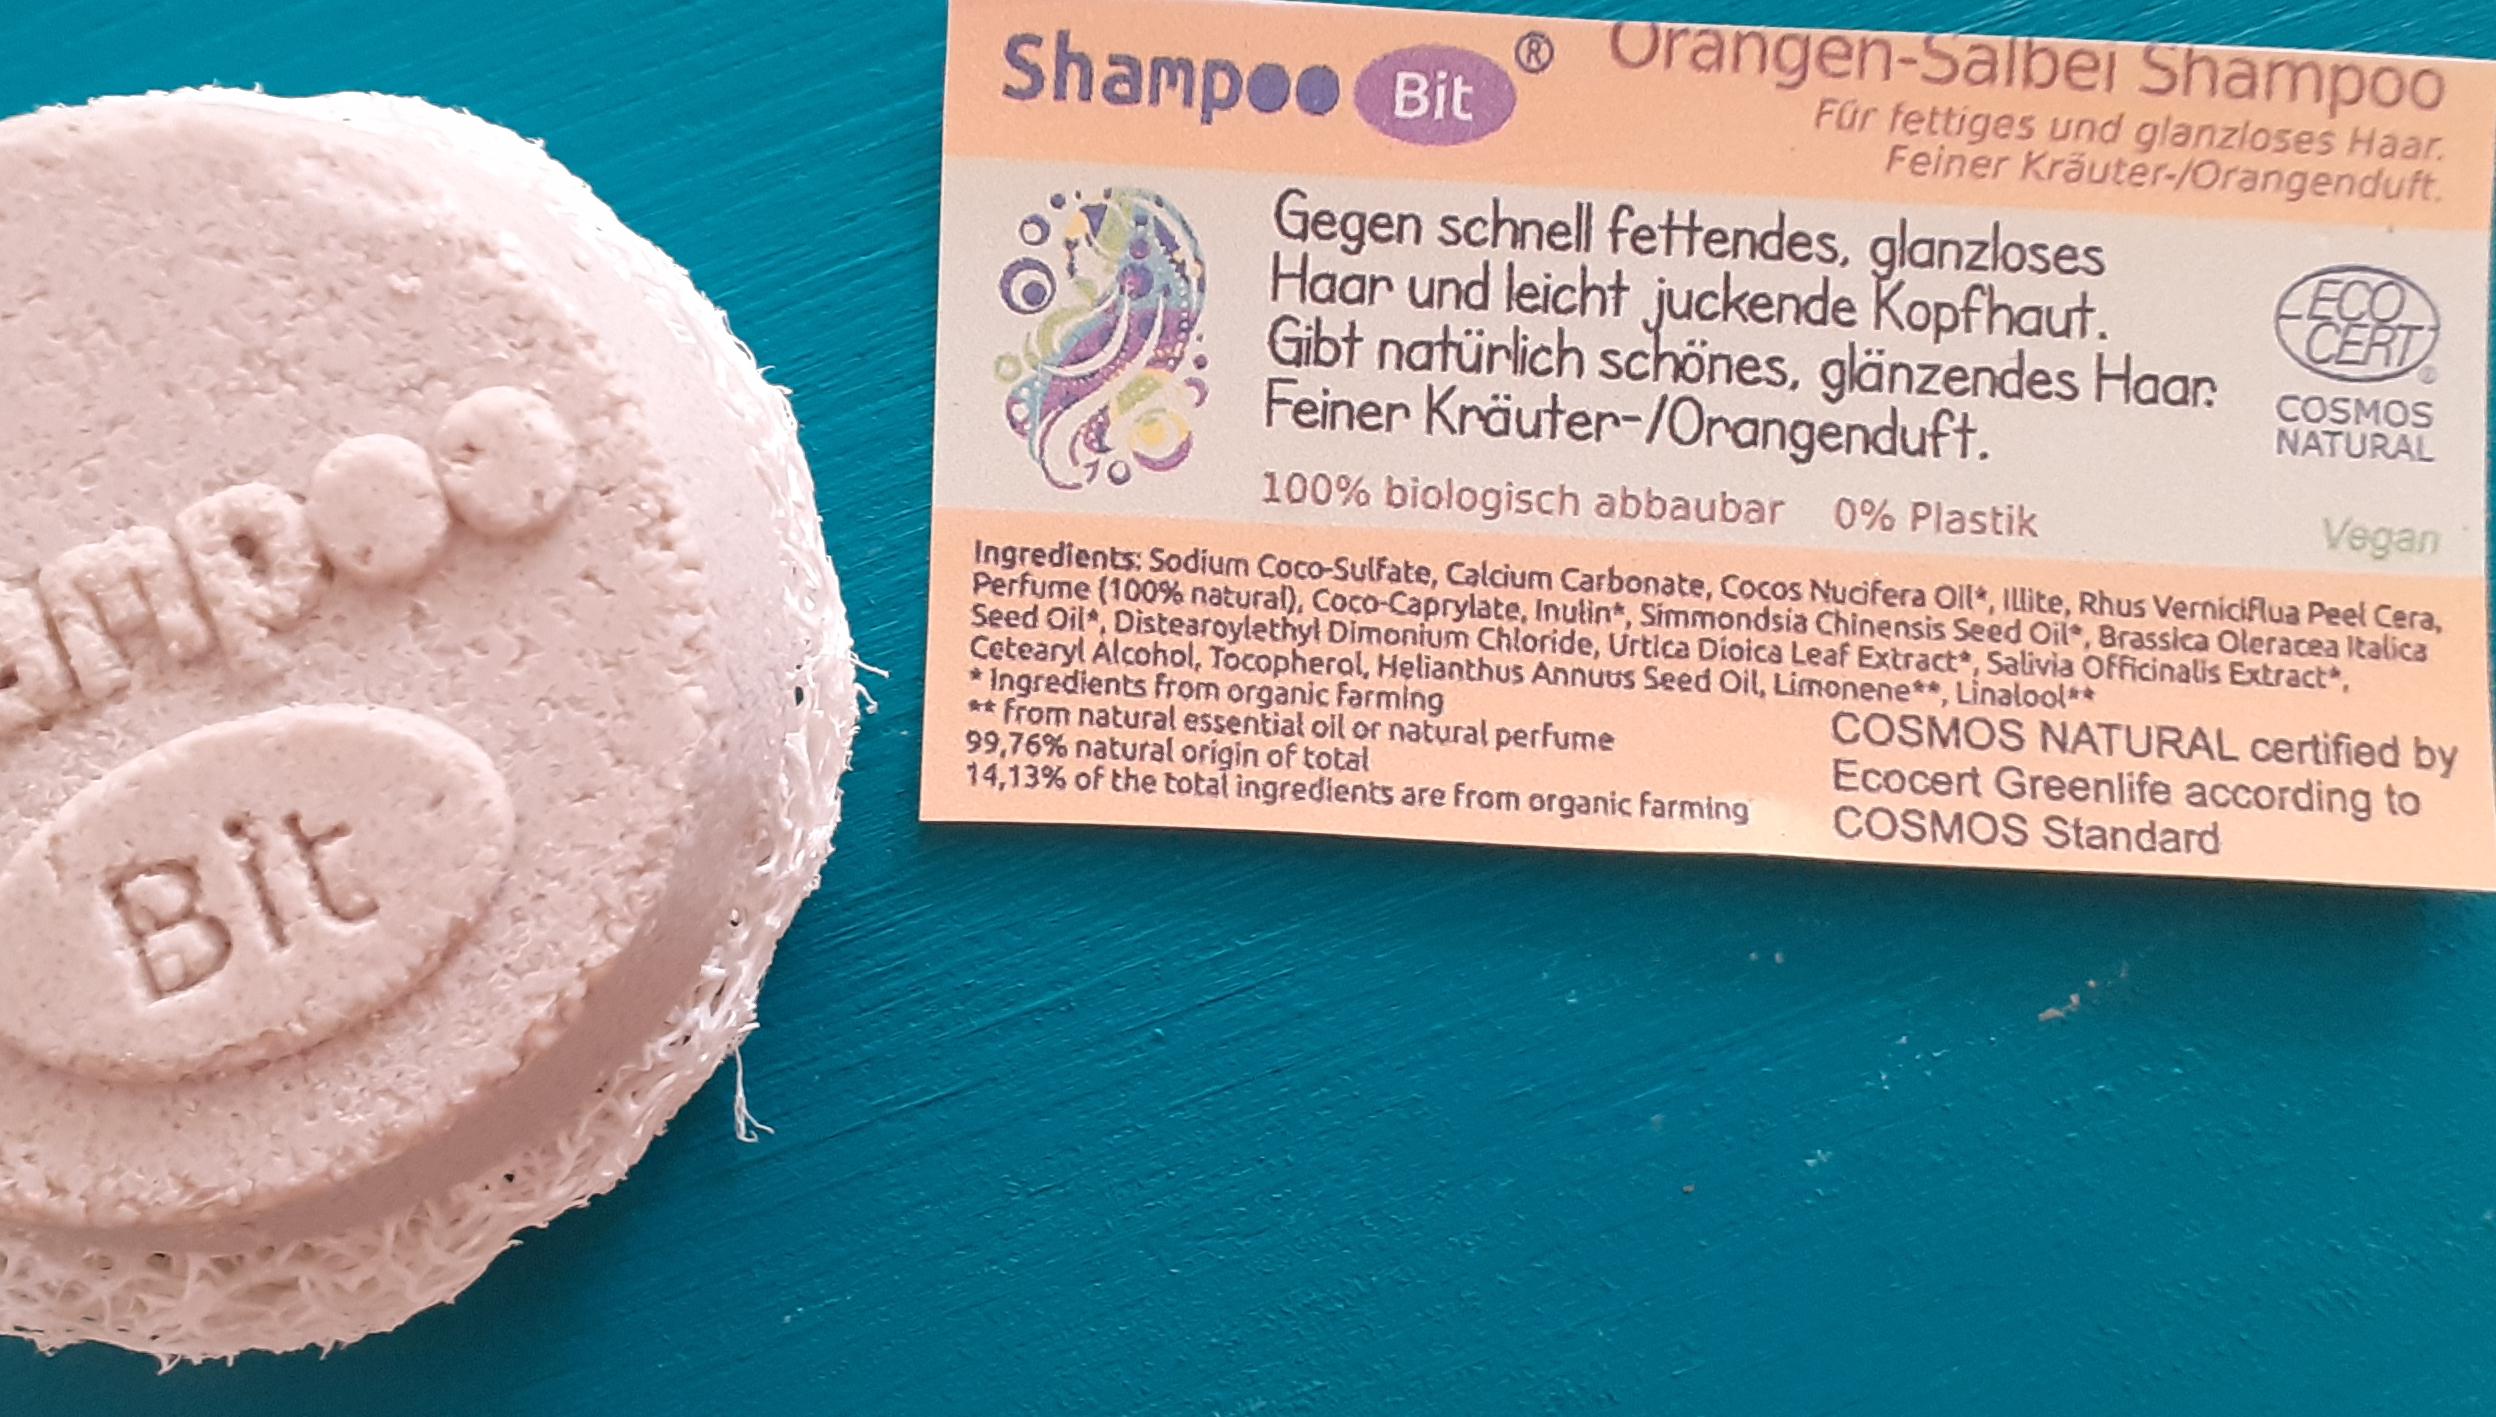 Shampoo Bit von Rosenrot, Orangen Salbei